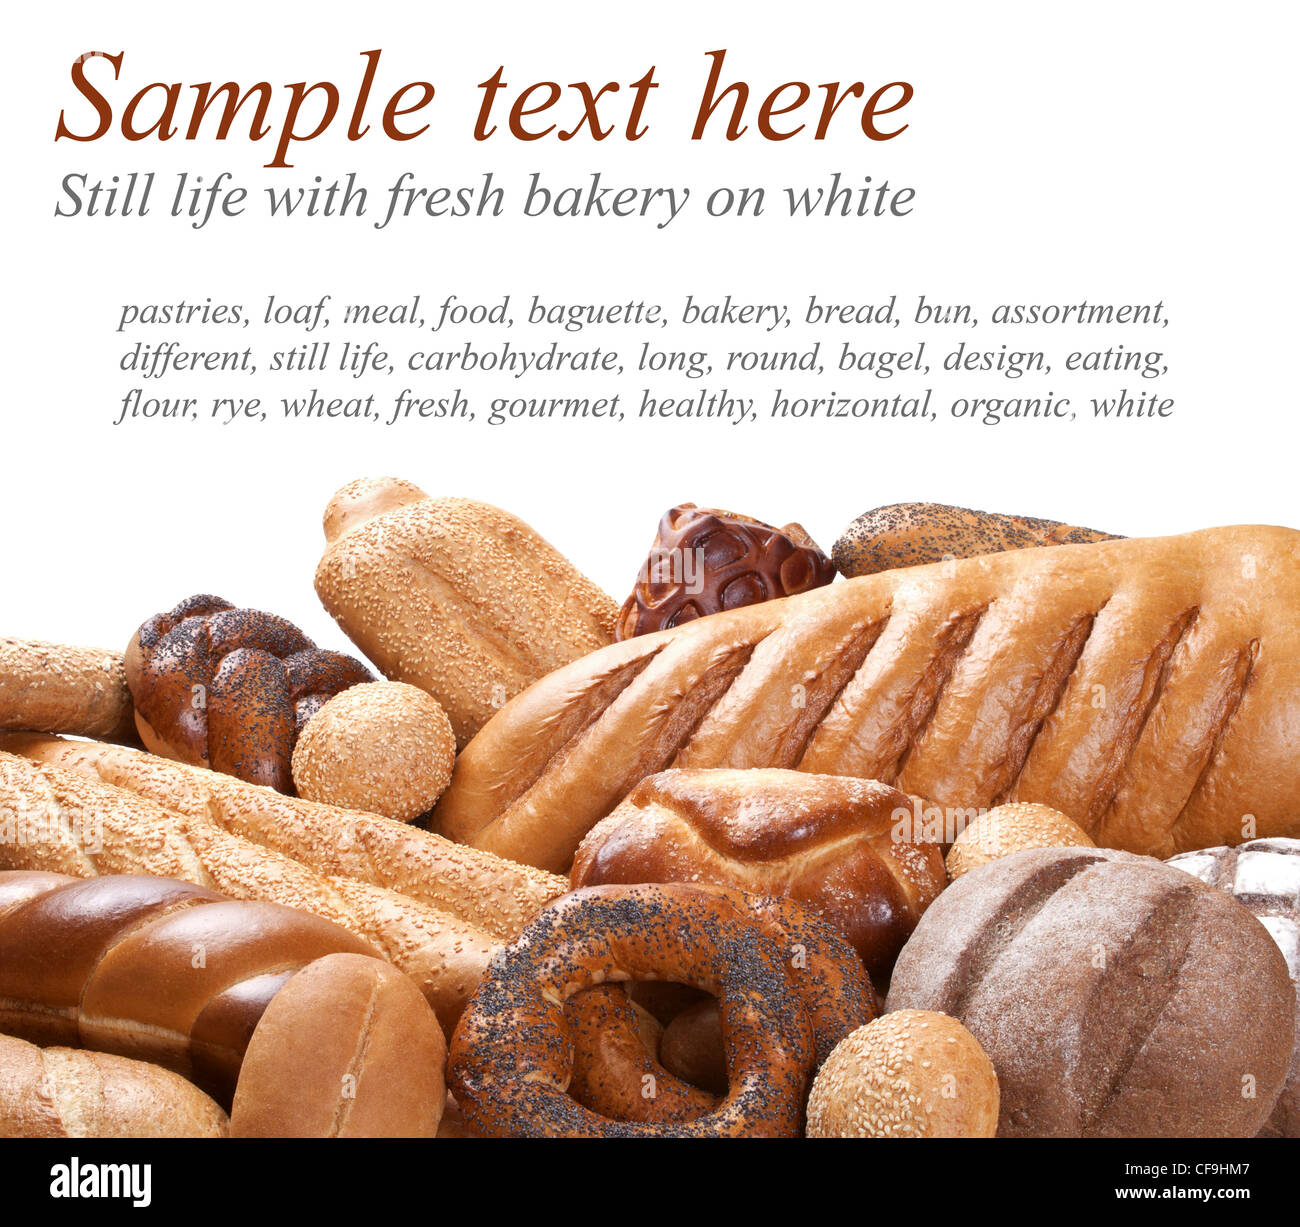 Bakery in primo piano con un testo di esempio su bianco Foto Stock